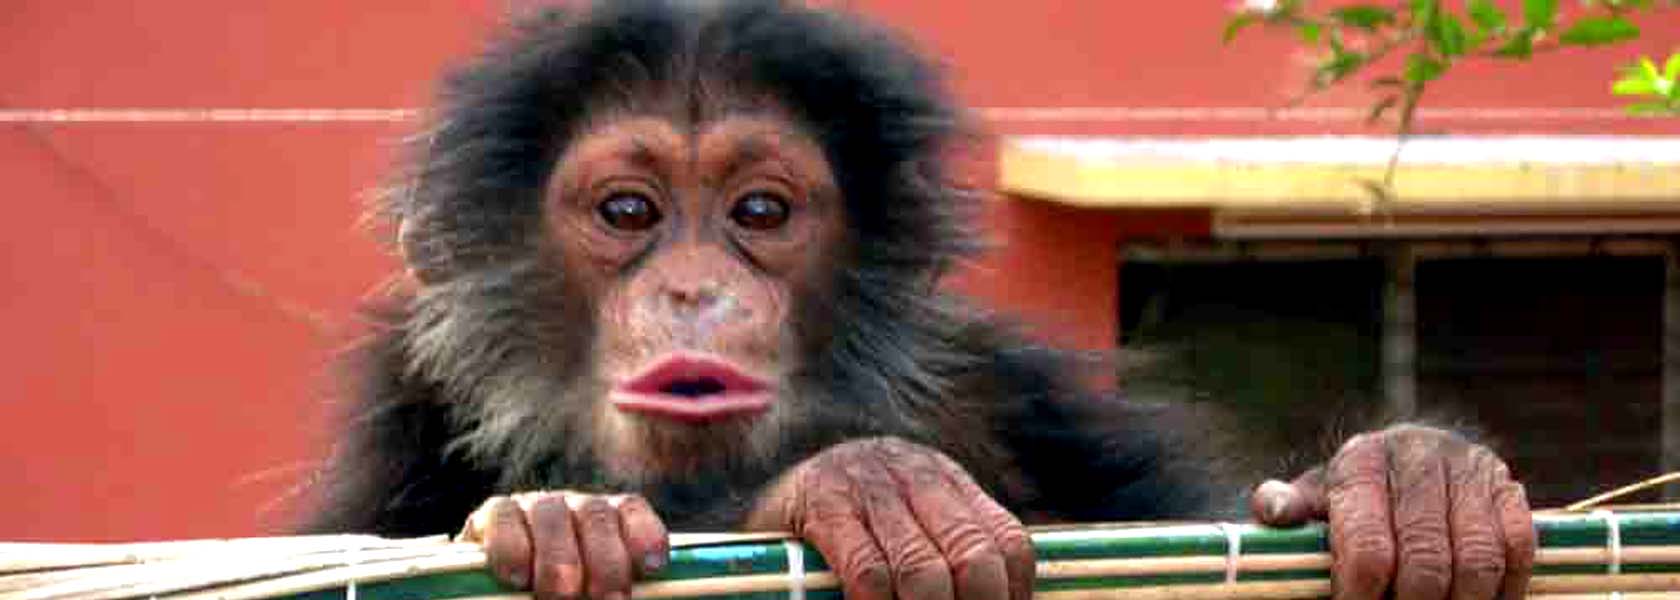 chimpanze et nombreux singes dans le parc de kantanies en guinée bissau